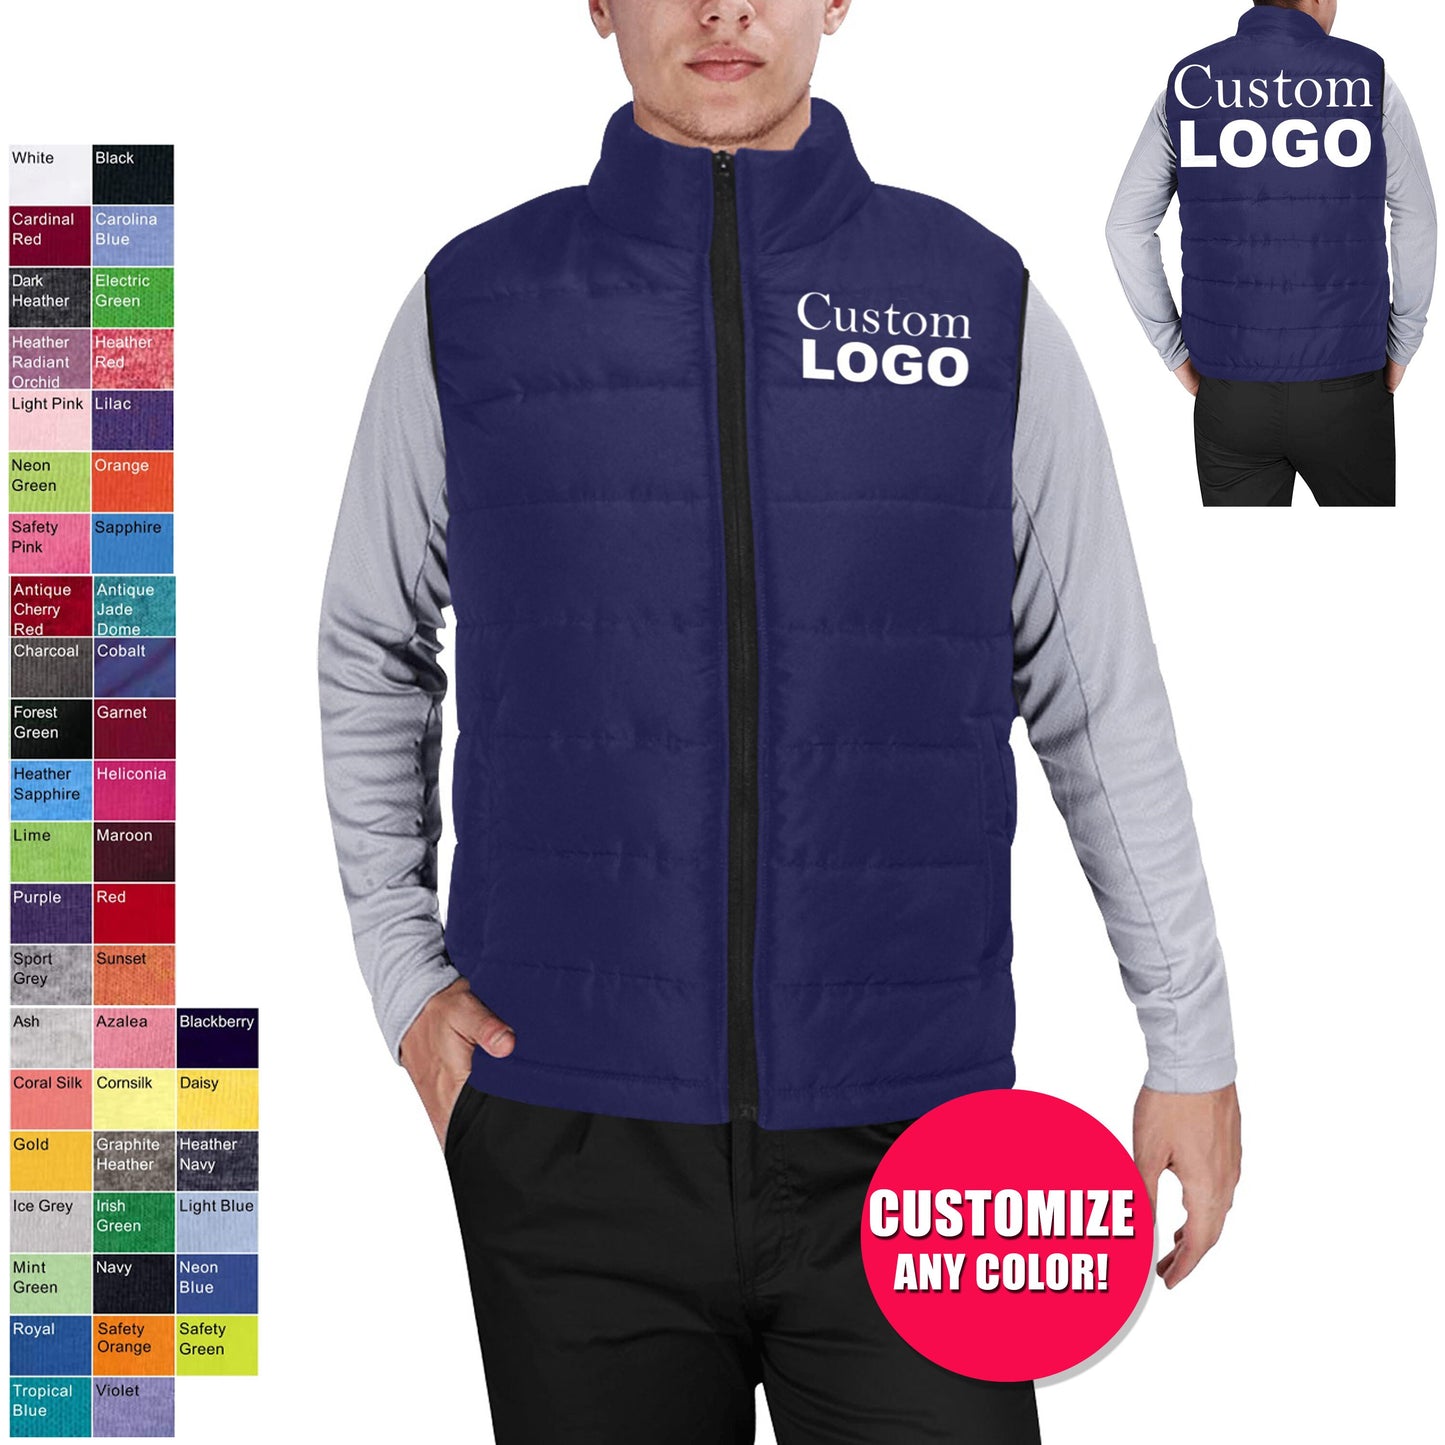 Custom Puffer Vest Jacket - Adult Padded jacket,Winter Jacket, Winter Vest,Coat,Customized jacket, Organization, School jacket,Team,